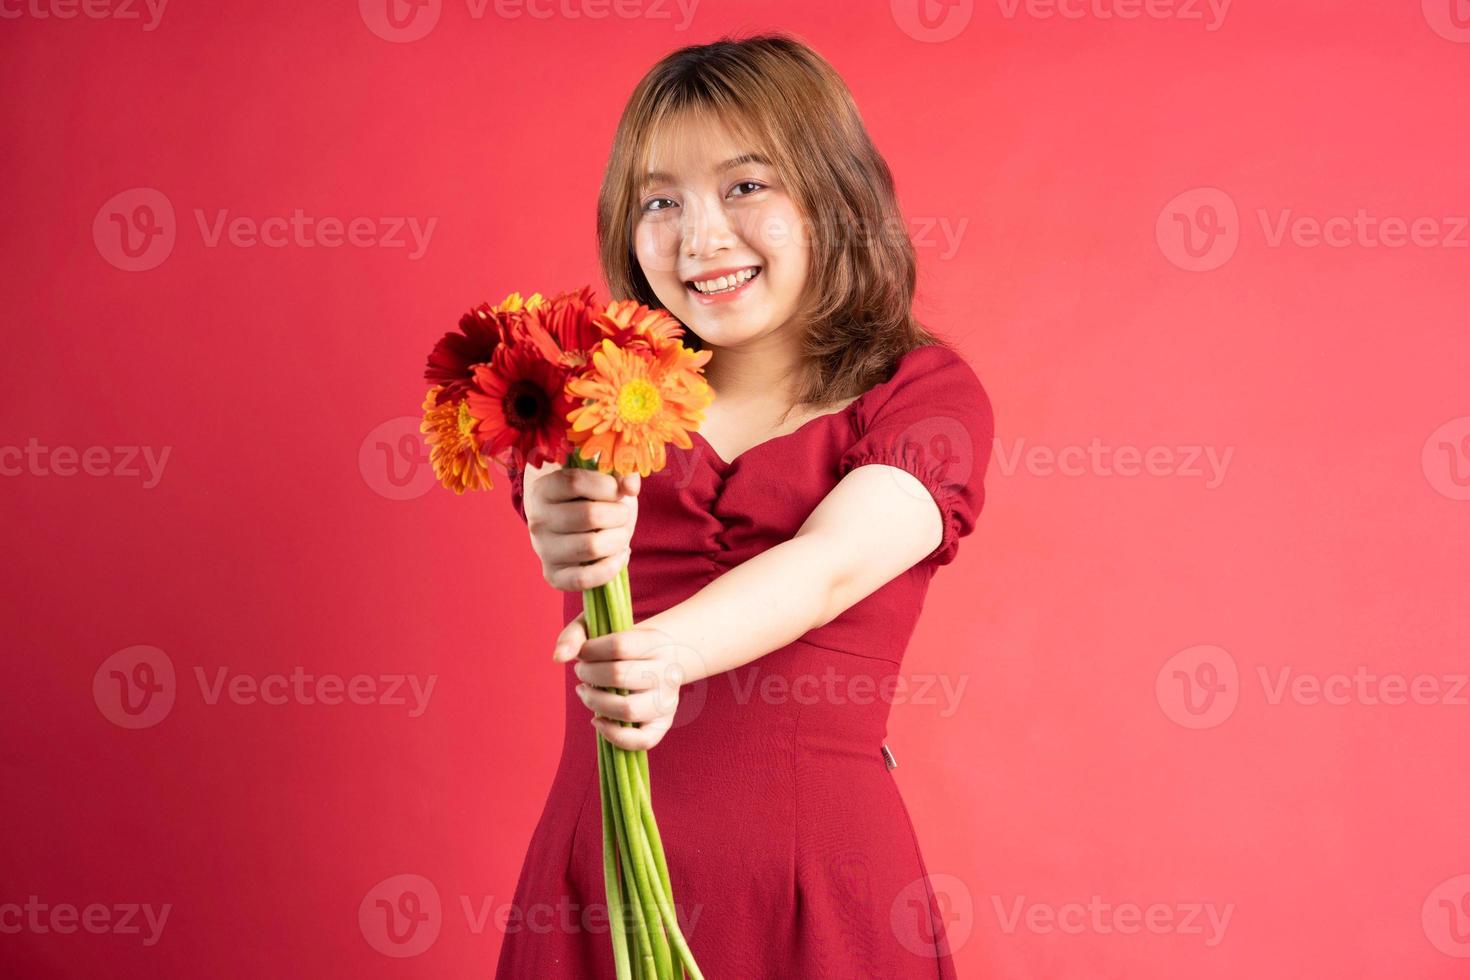 jong meisje met een boeket gerbera's met een vrolijke uitdrukking op de achtergrond foto